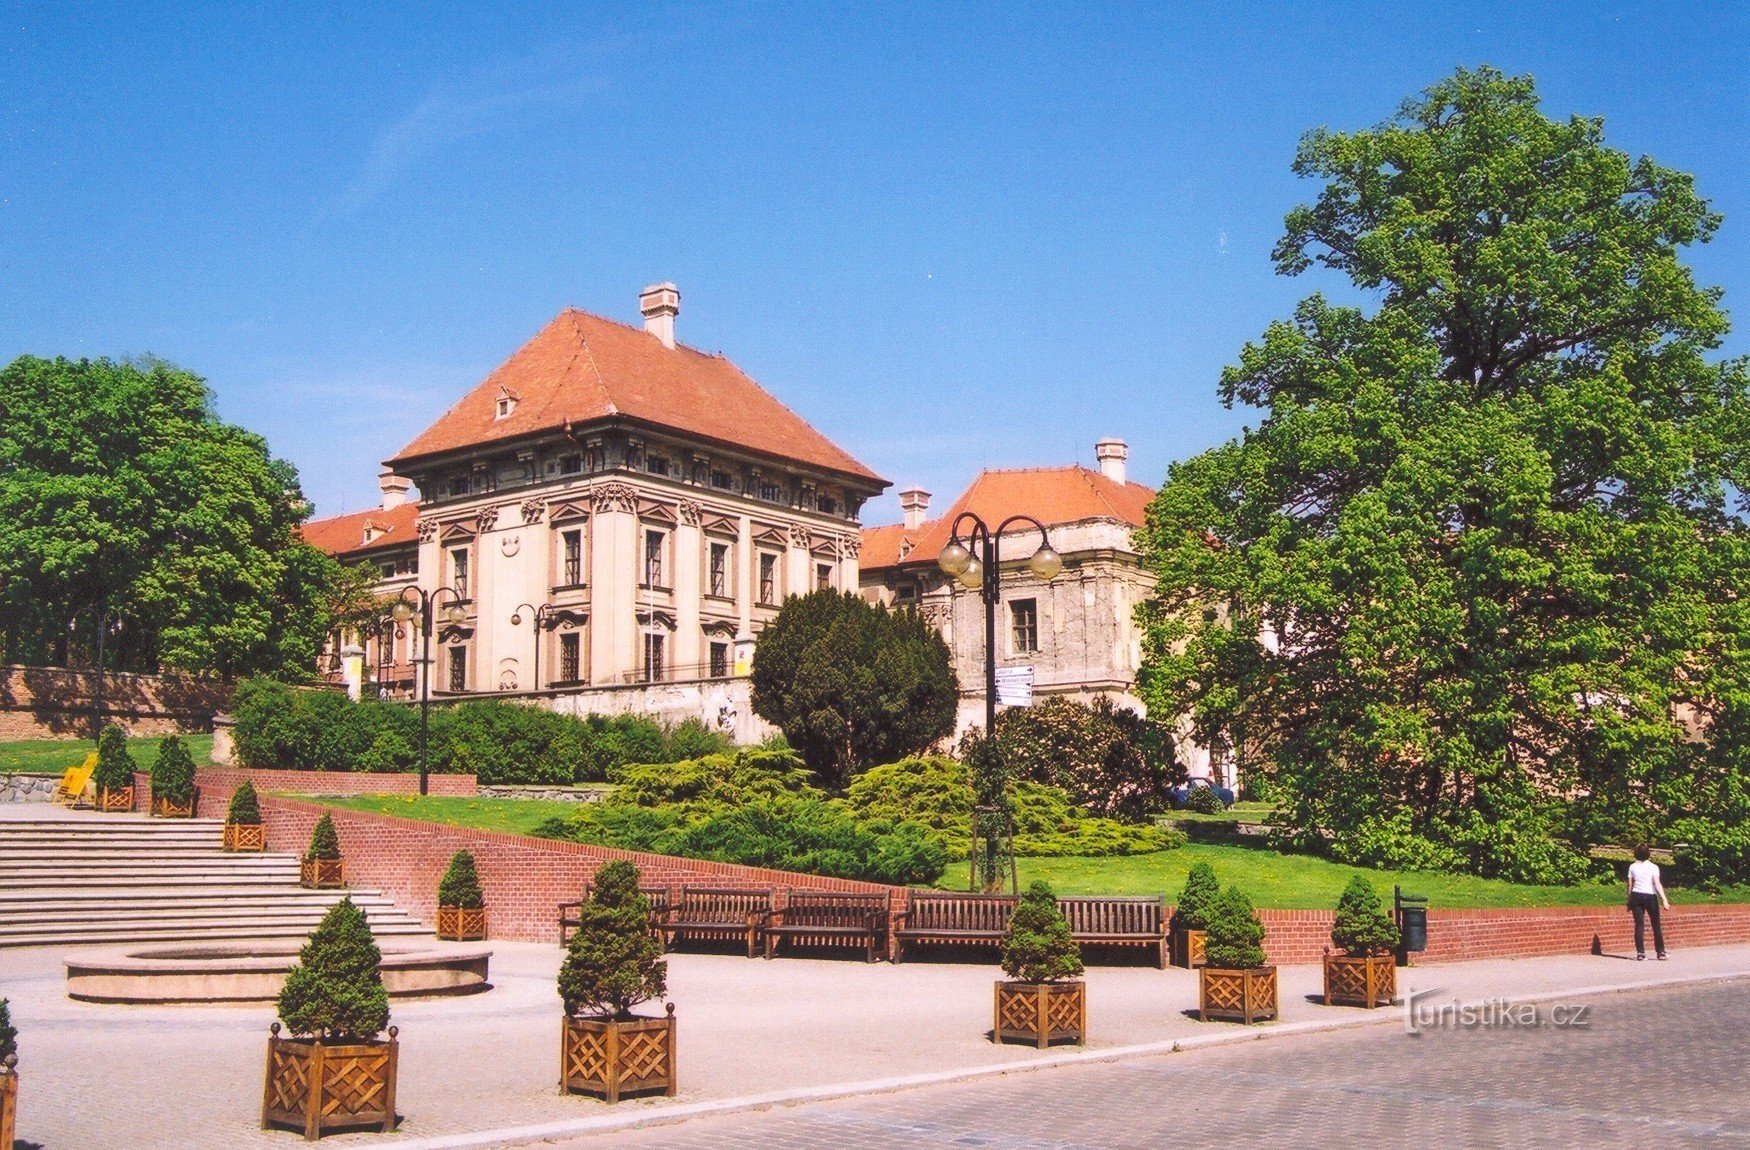 Slavkov u Brno - kasteel, entreedeel